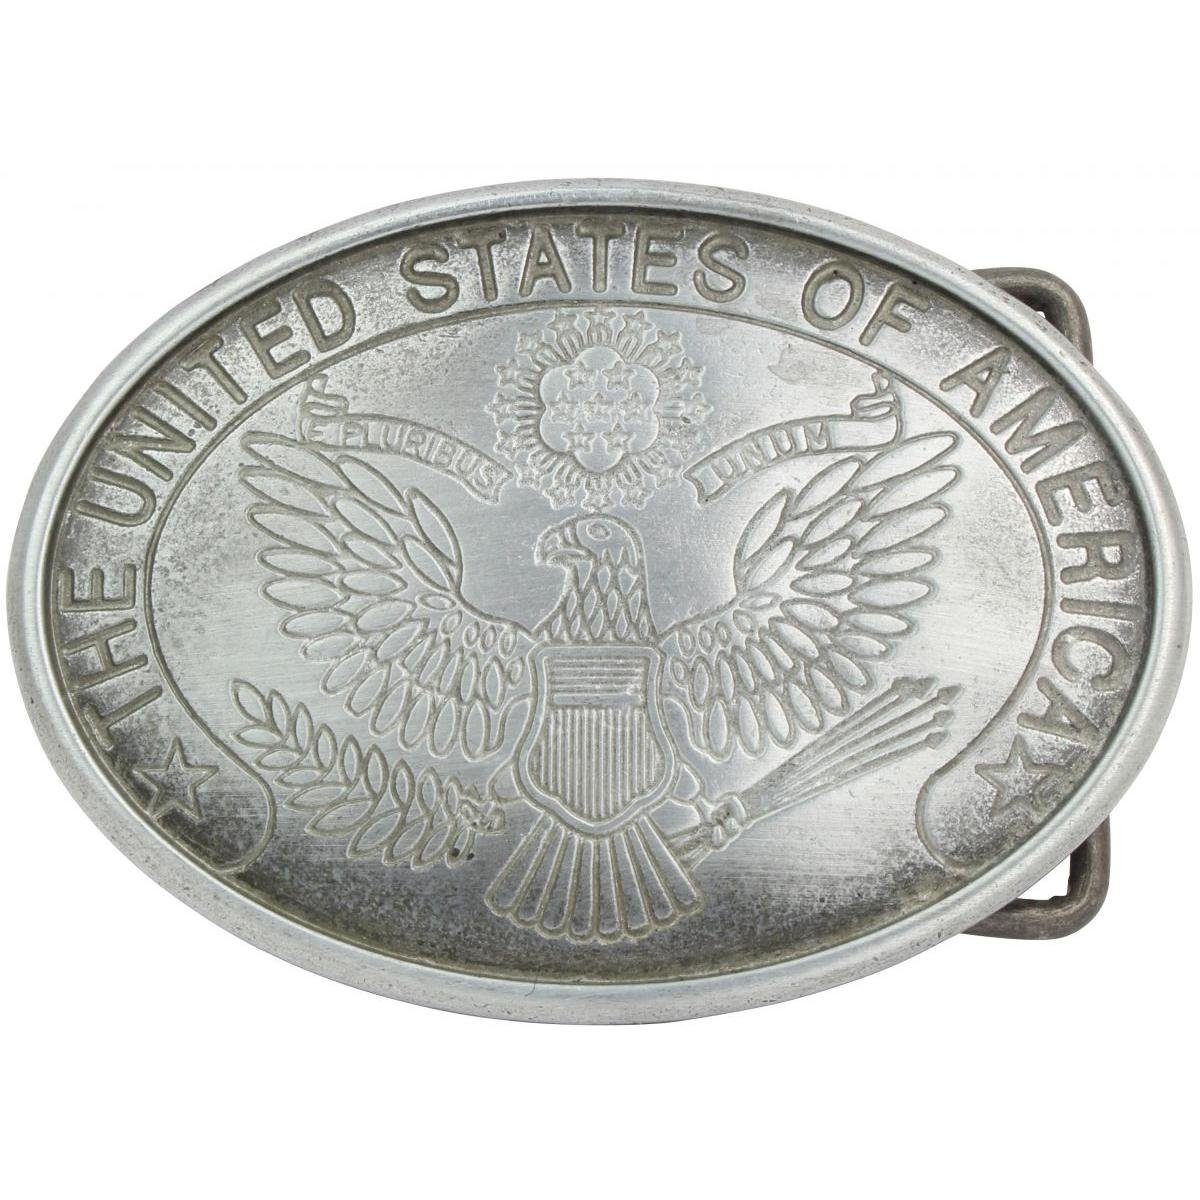 Altsilber of 4,0 - cm Gürtelschnalle BELTINGER Wechselschließe America United Buckle Gürtelschließ States